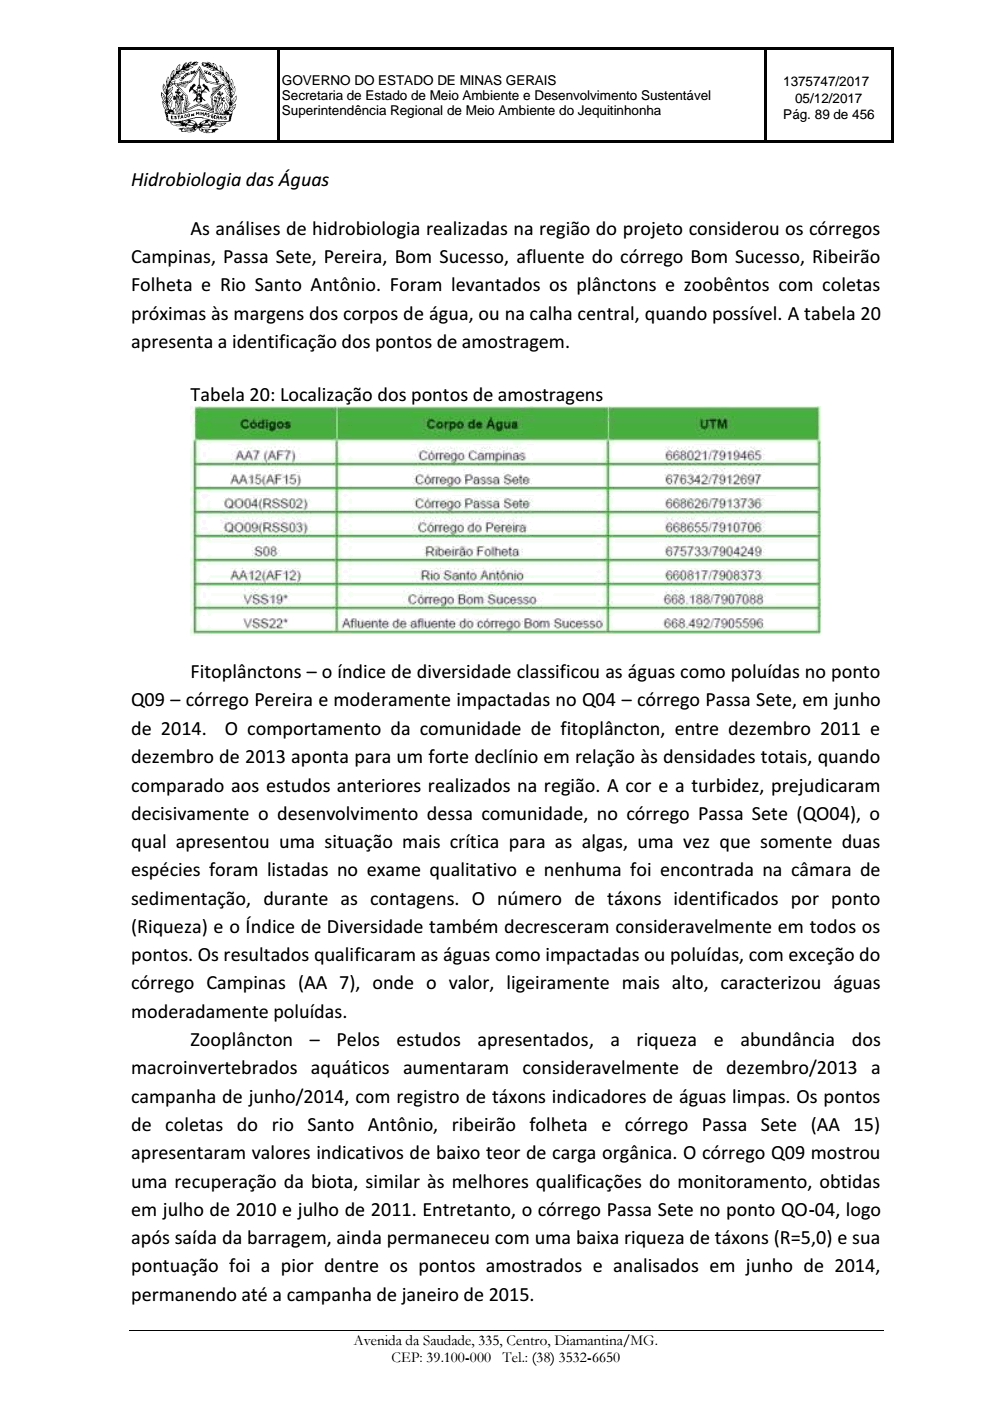 Page 89 from Parecer único da Secretaria de estado de Meio Ambiente e Desenvolvimento Sustentável (SEMAD)